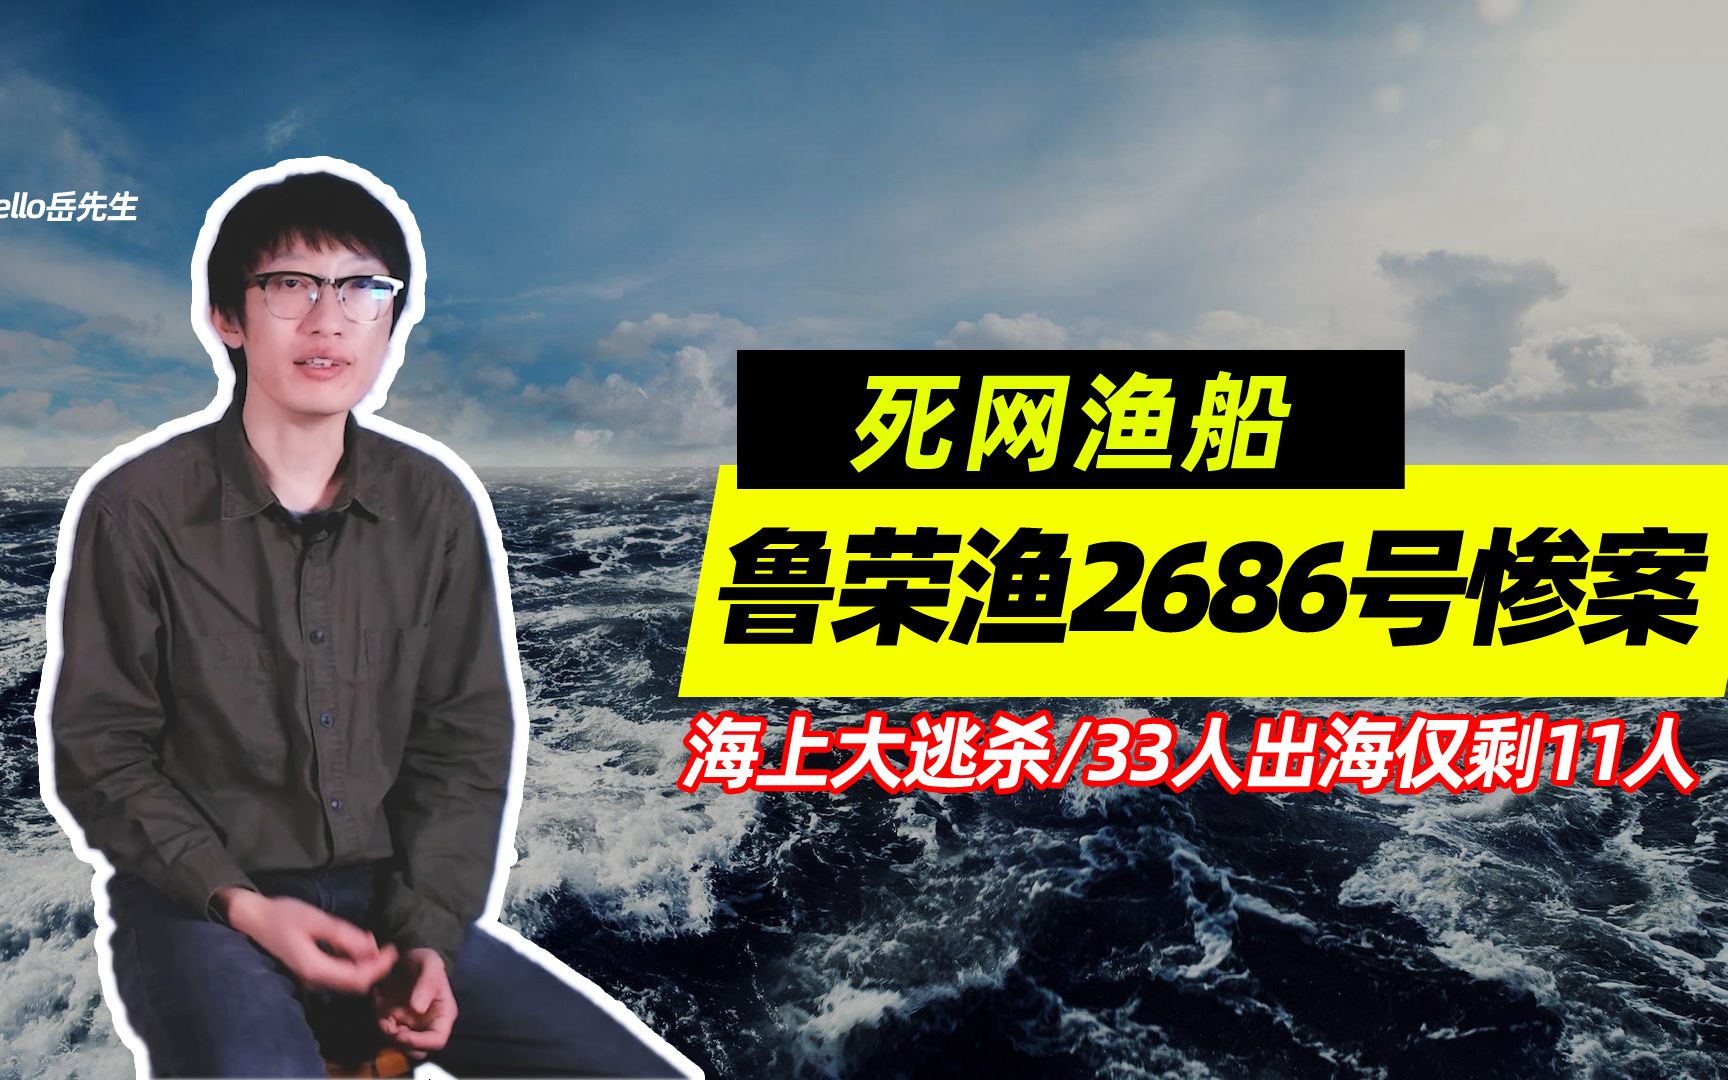 活动作品死网渔船海上大逃杀33人出海仅剩11人鲁荣渔2682号惨案真相